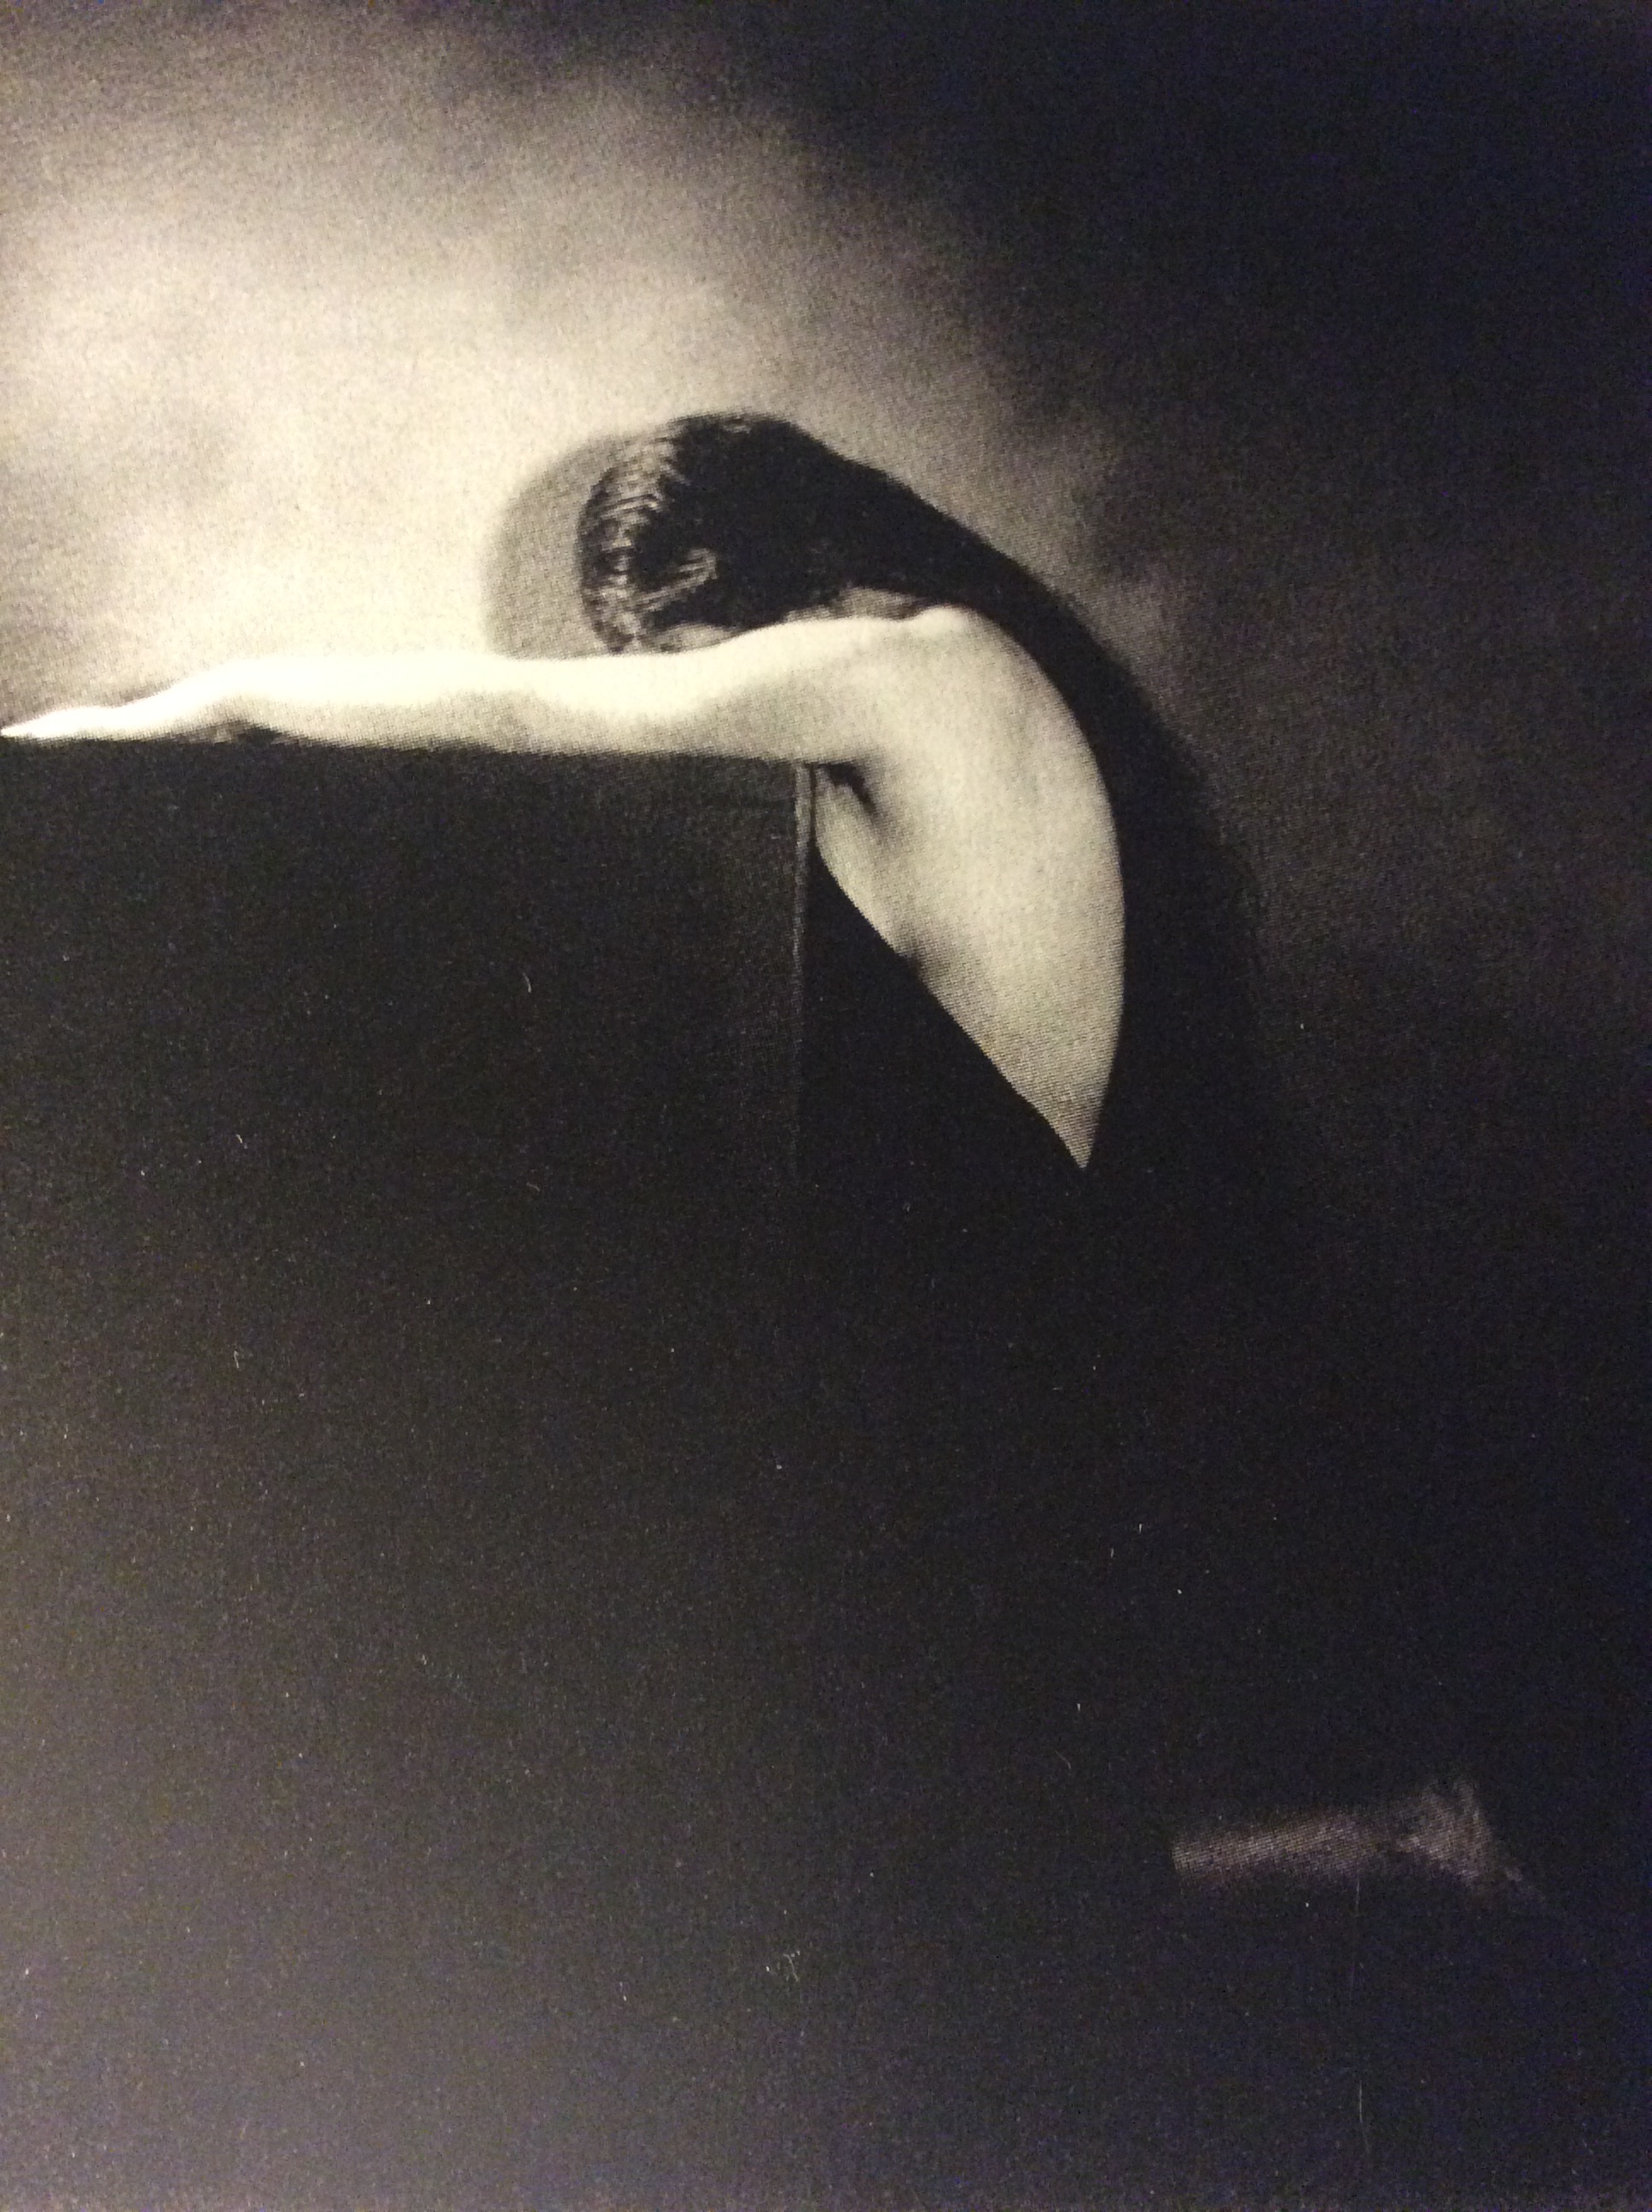 Las lluvias del oeste llegarán. Fragmento de una fotografía de André Garban c. 1930. Impresión en gelatina de bromuro de plata